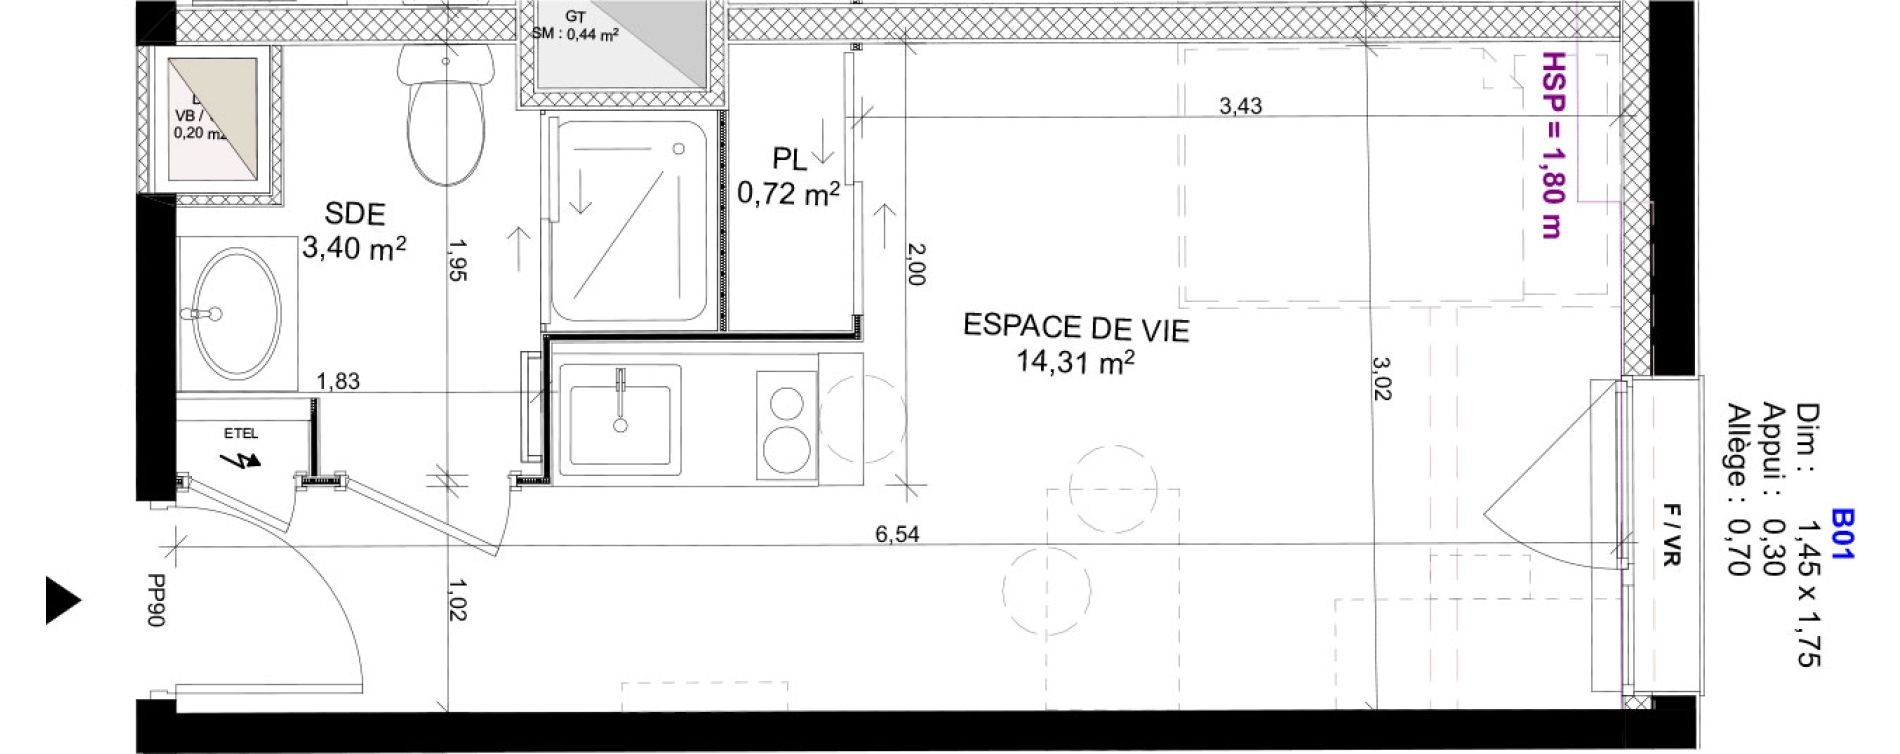 Appartement T1 meubl&eacute; de 18,43 m2 au Havre Sainte marie - saint leon